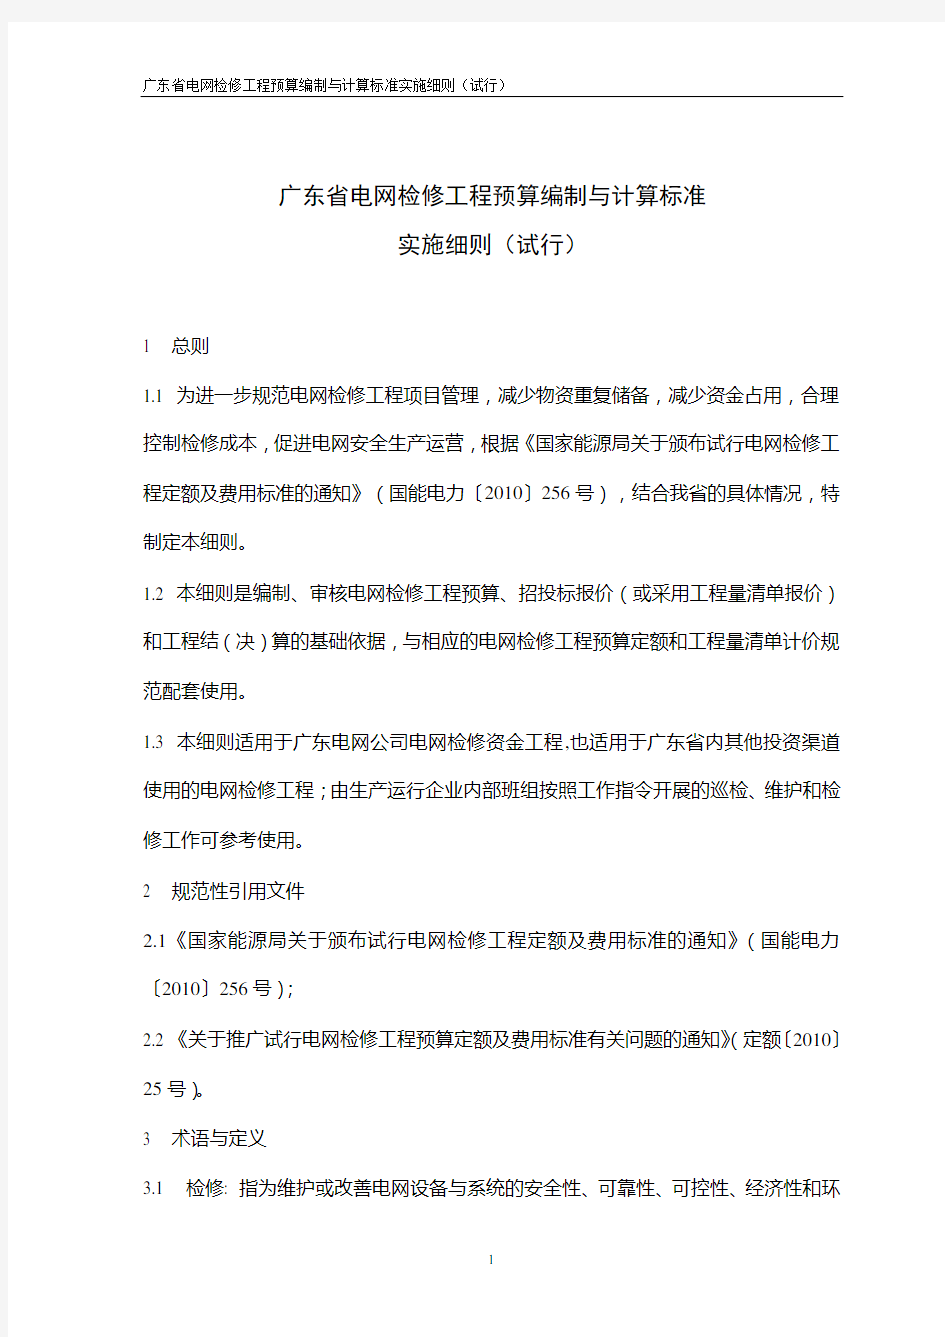 广东省电网检修工程预算编制与计算标准实施细则(试行)